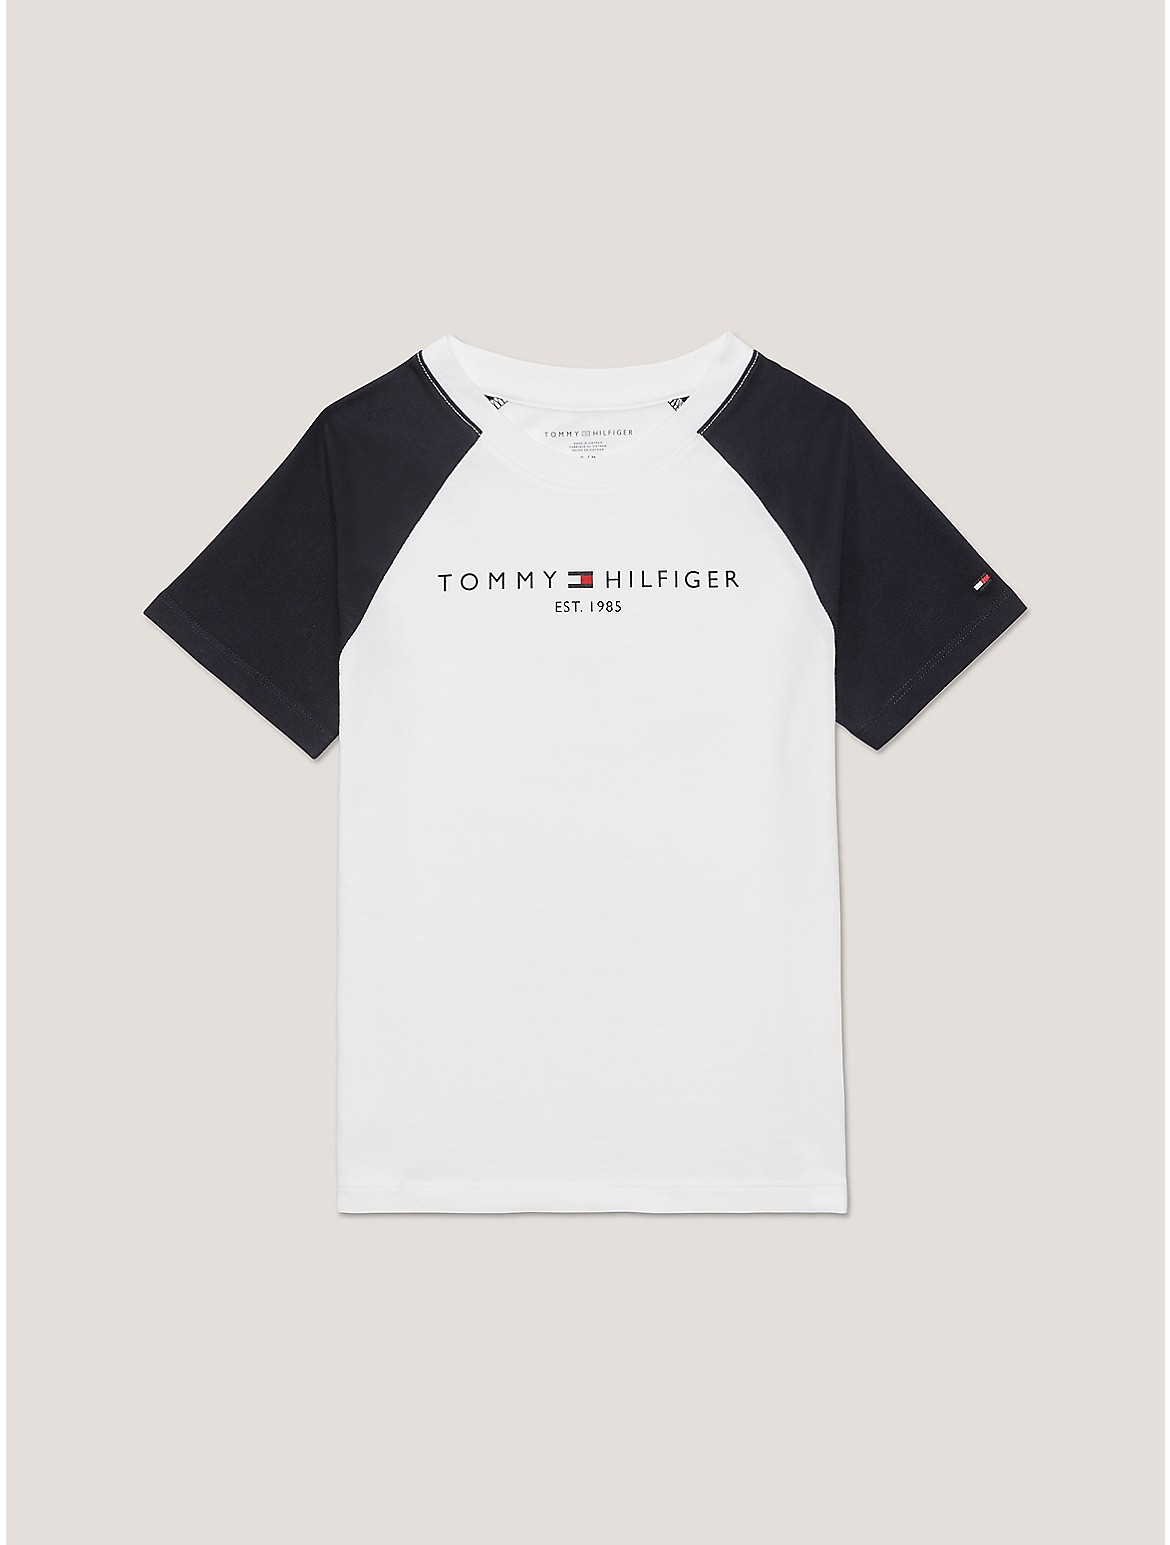 Tommy Hilfiger Boys' Kids' Baseball T-Shirt - White - XS